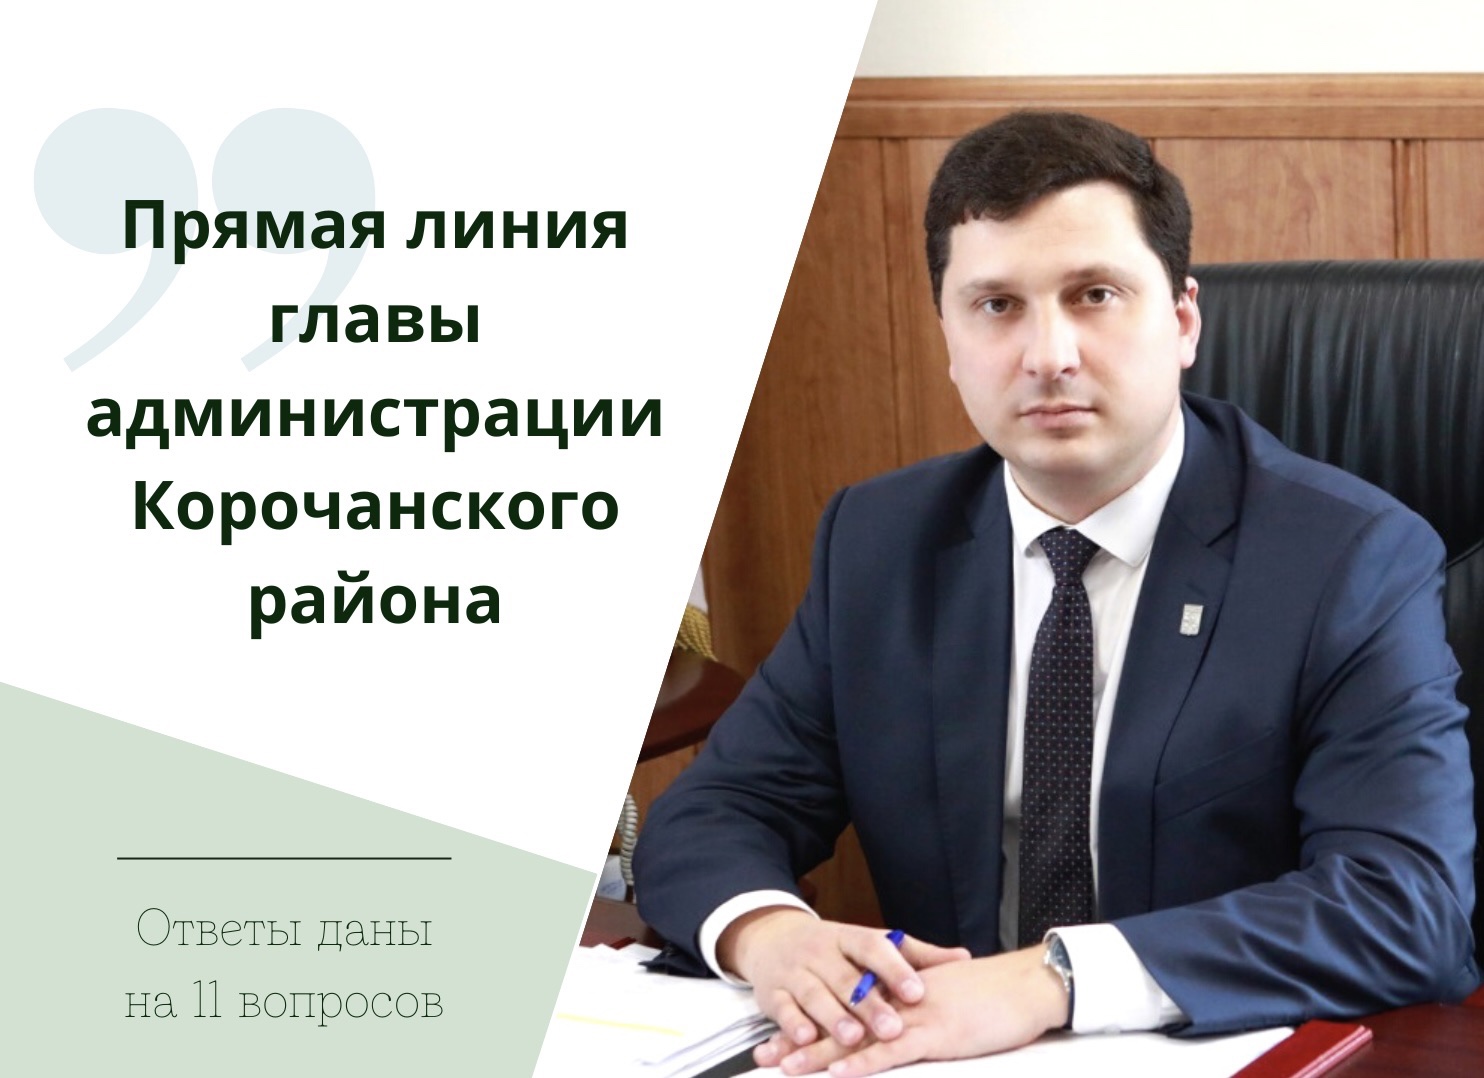 В ходе прямой линии глава администрации района Николай Нестеров ответил на 11 вопросов.